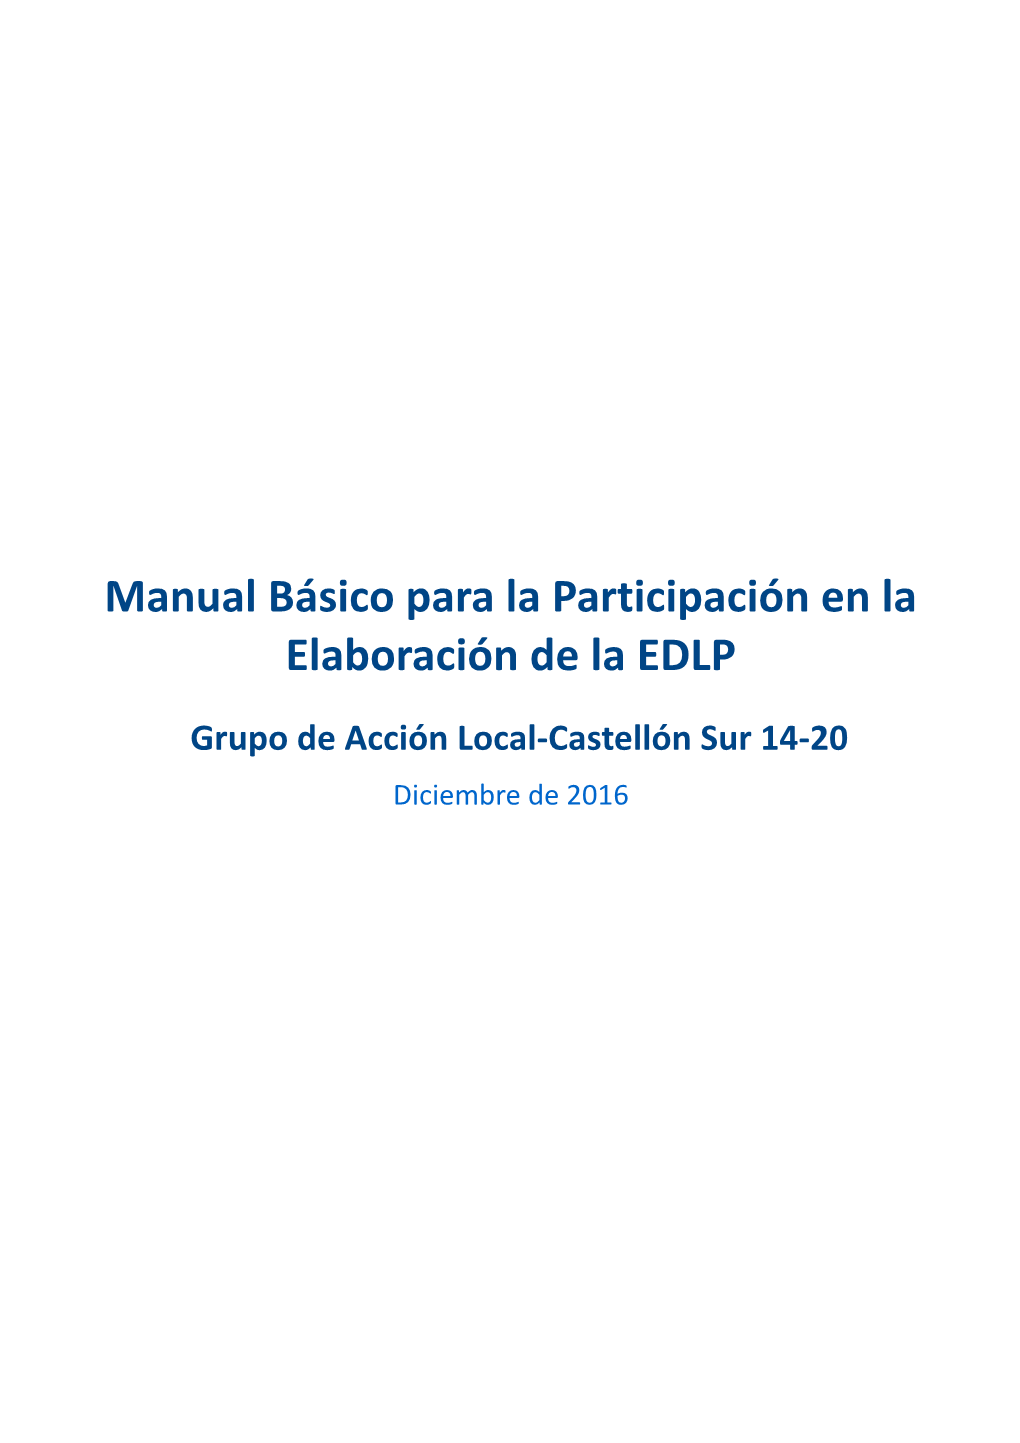 Manual Básico Para La Participación En La Elaboración De La EDLP